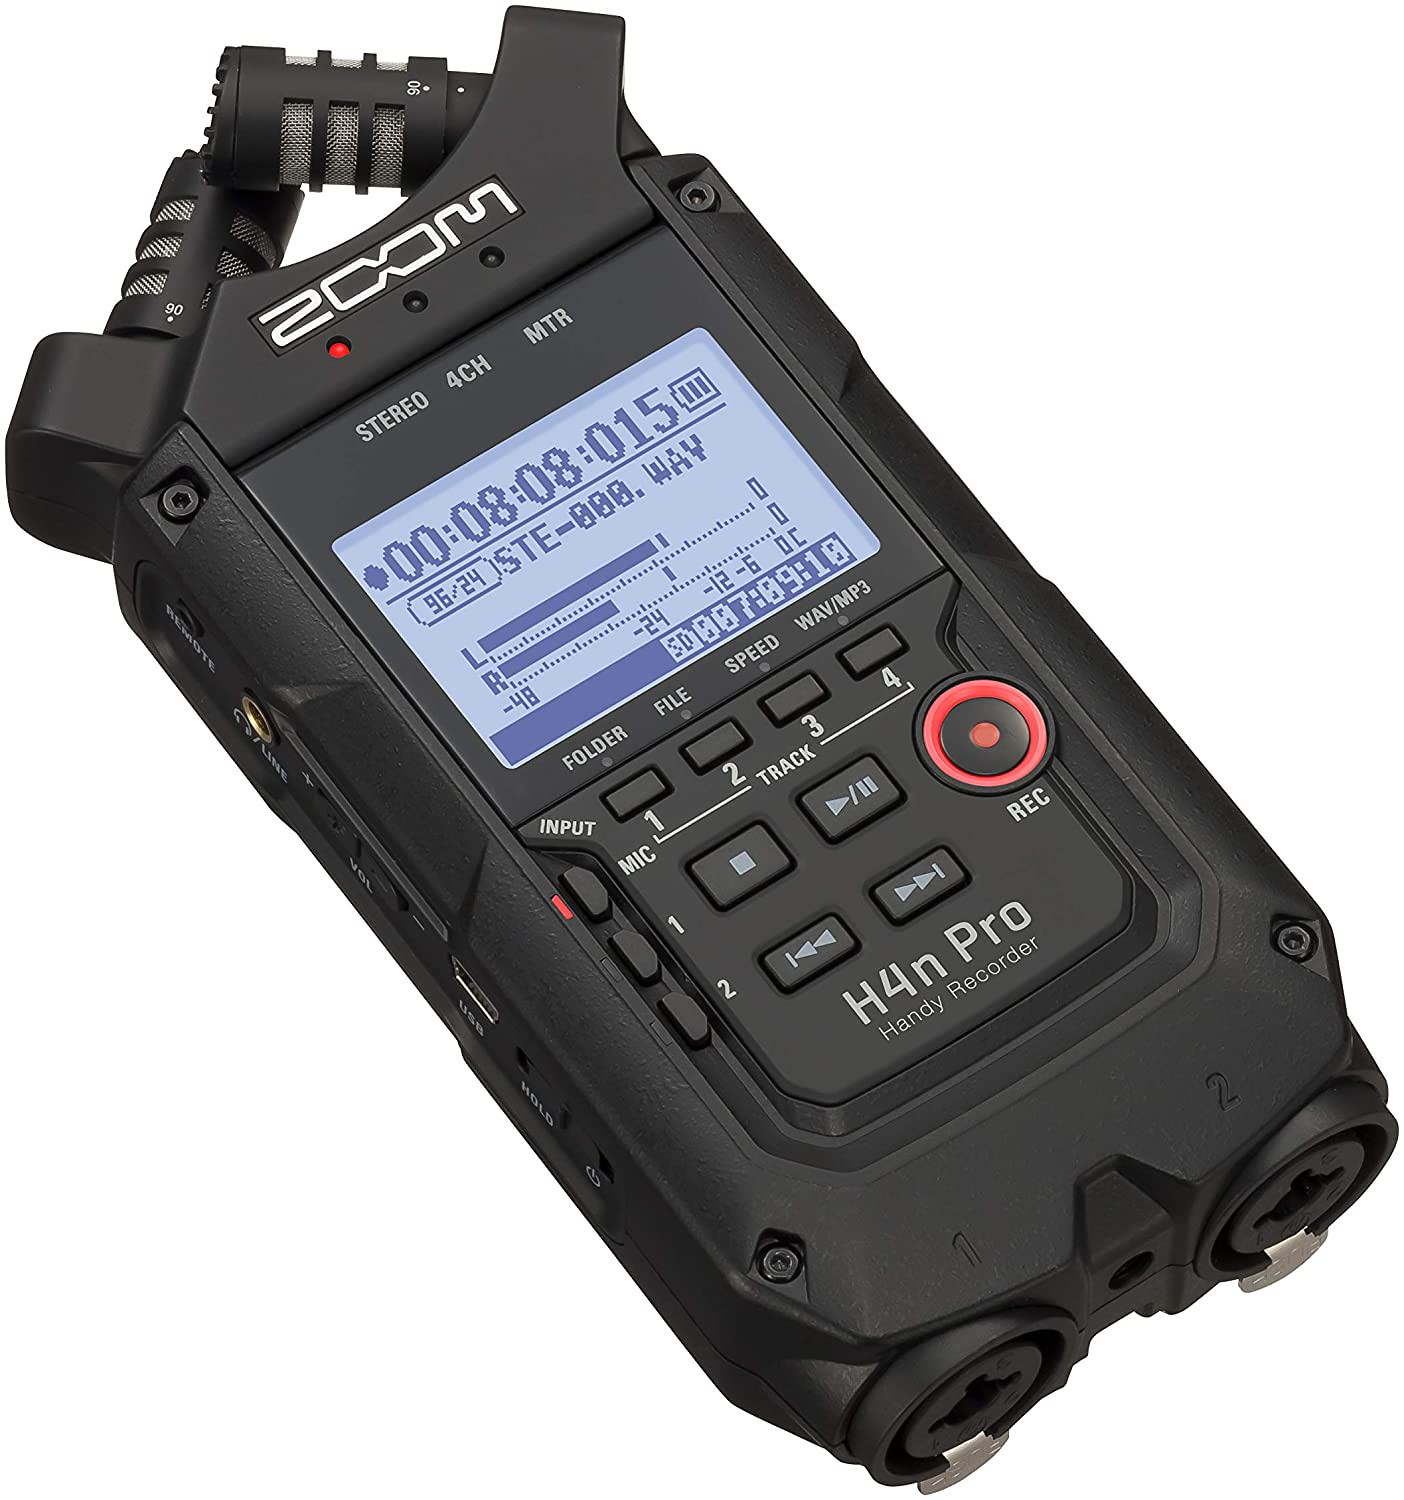 Zoom H4n Pro digital audio recorder